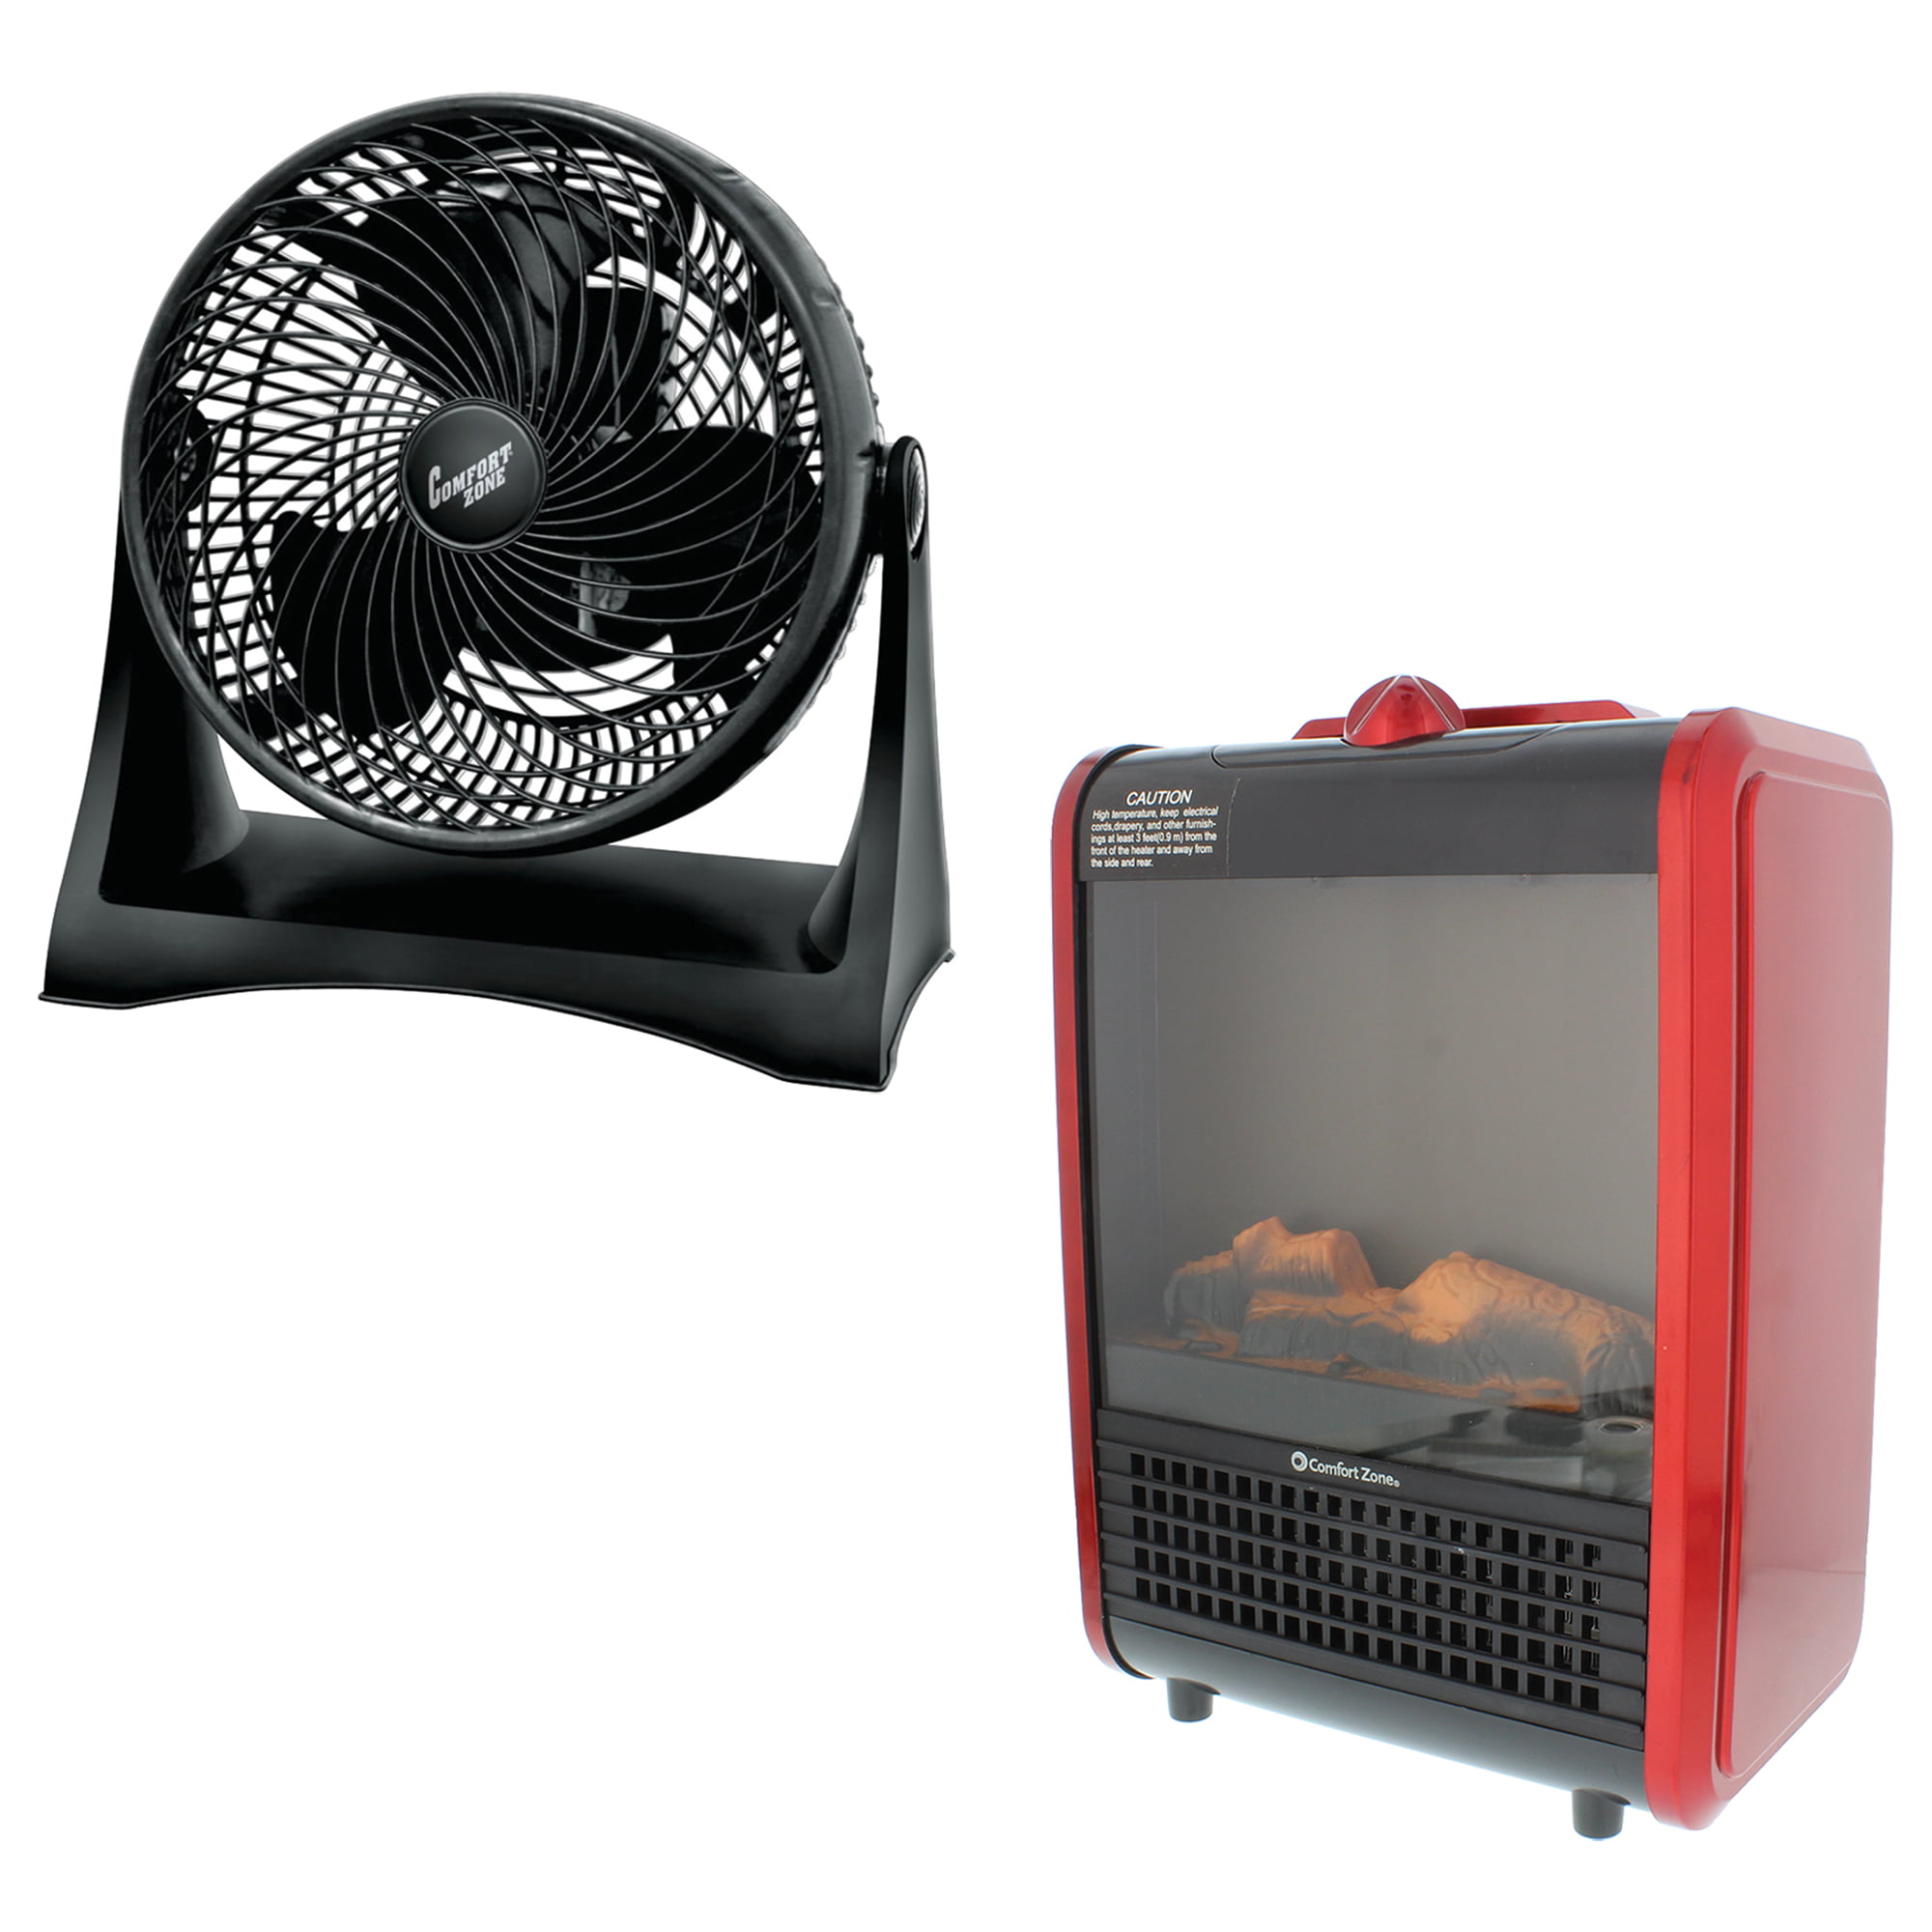 DC High Volume d'Air Turbo Ventilateur turbine ventilateur d'air Ventilateur pour picnic camping Hea... 